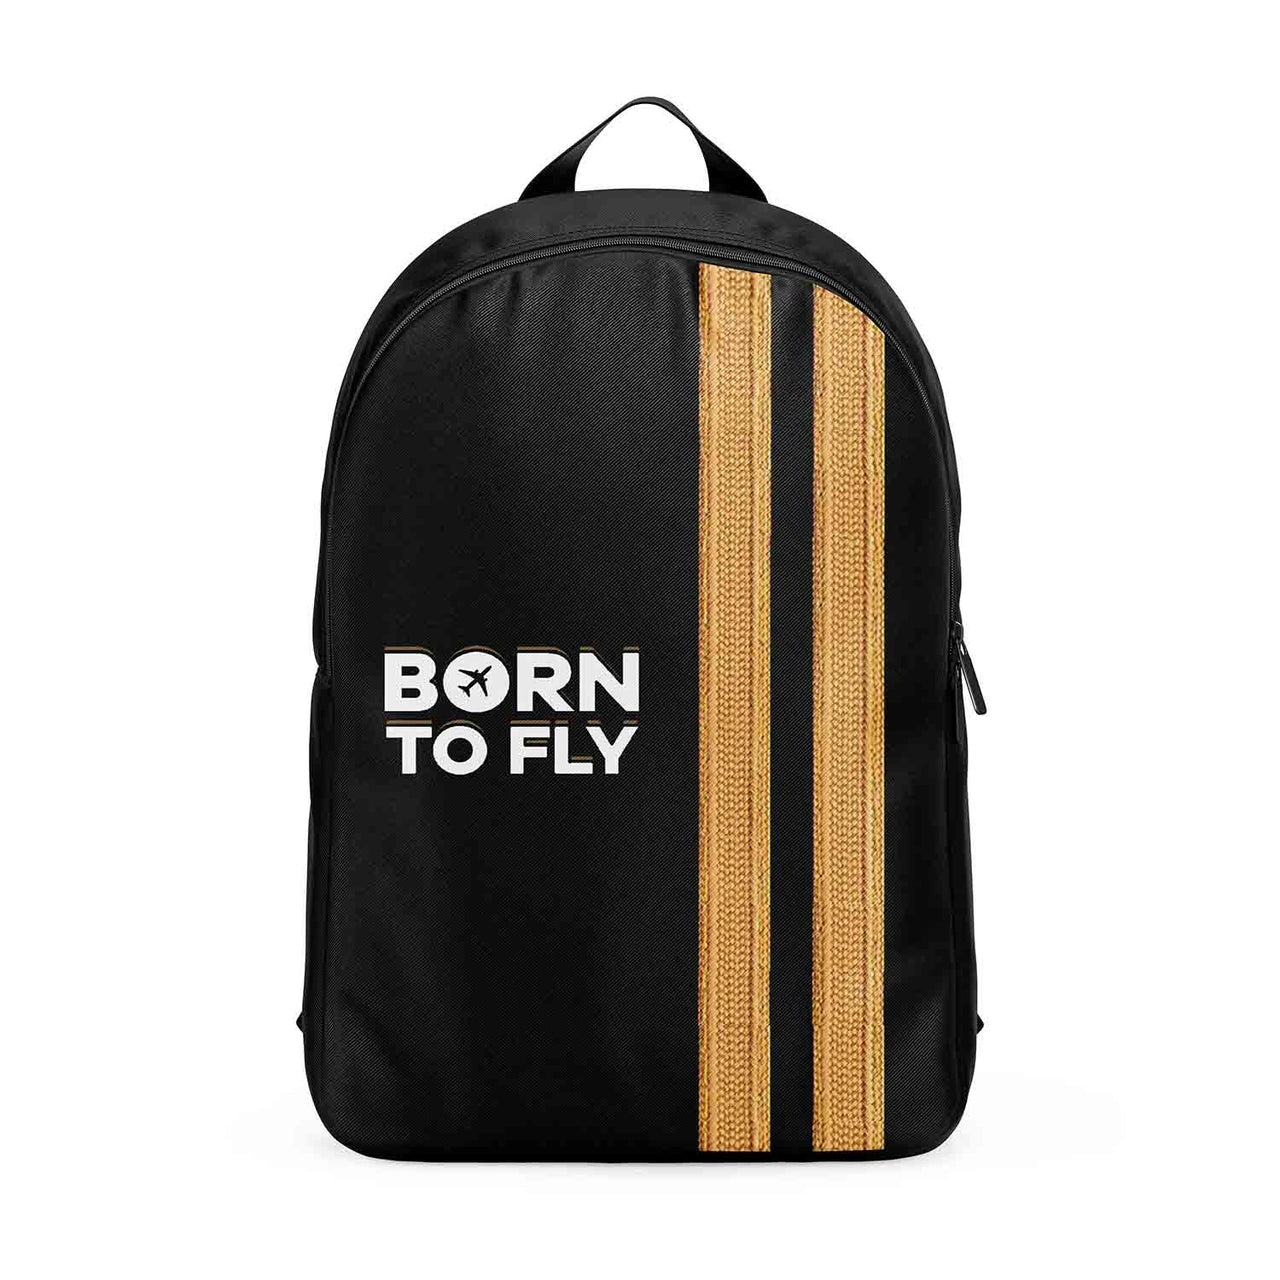 Born To Fly & Pilot Epaulettes (2 Lines) Designed Backpacks